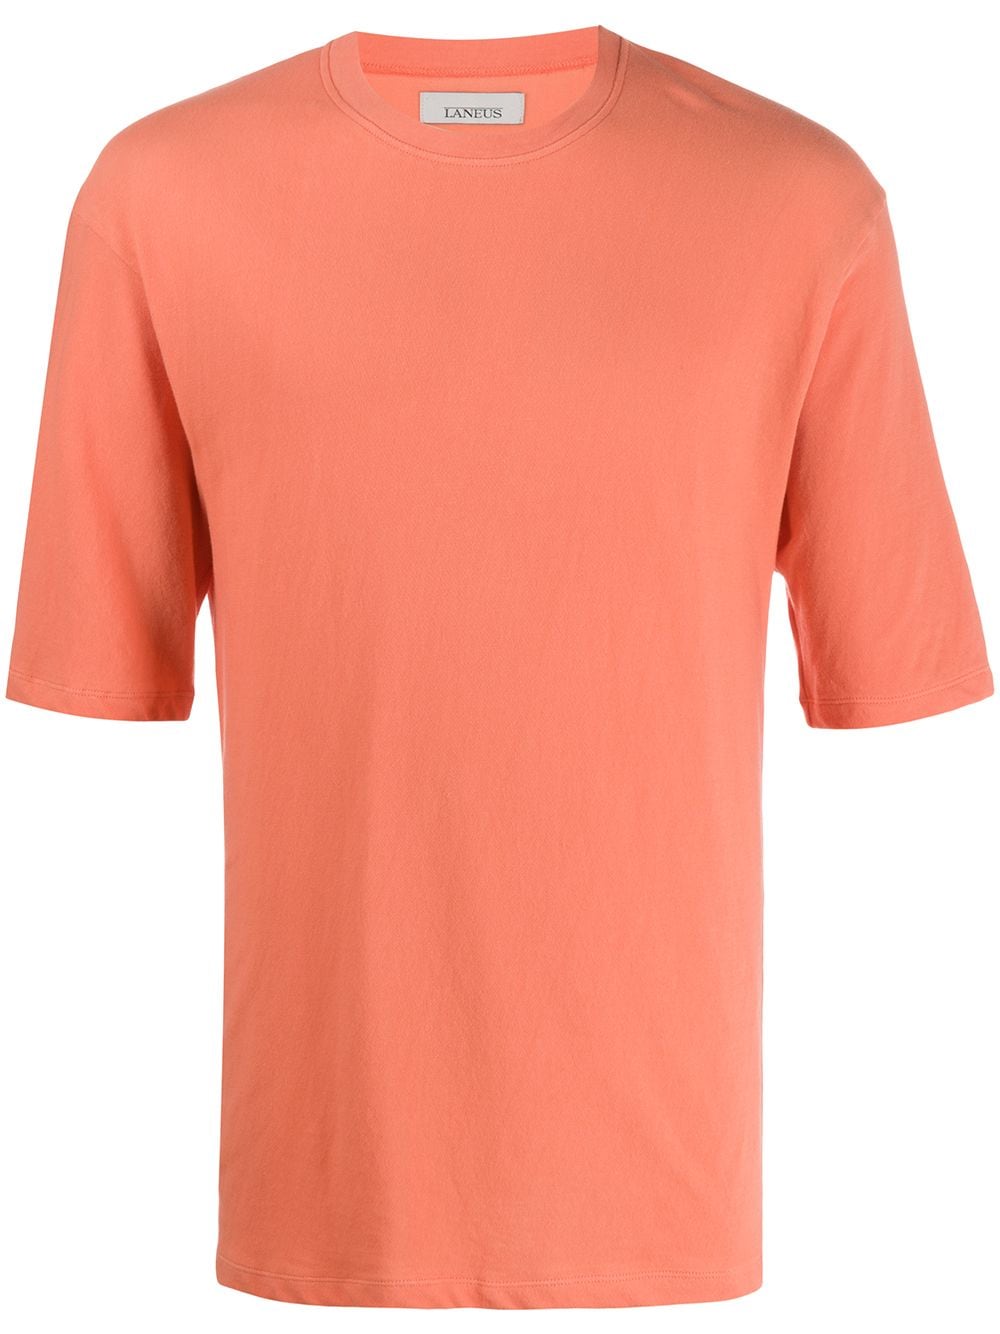 オレンジtシャツ コーデ特集 ビタミンカラーで明るい印象に仕上げたメンズの着こなし紹介 メンズファッションメディア Otokomaeotokomae 男前研究所